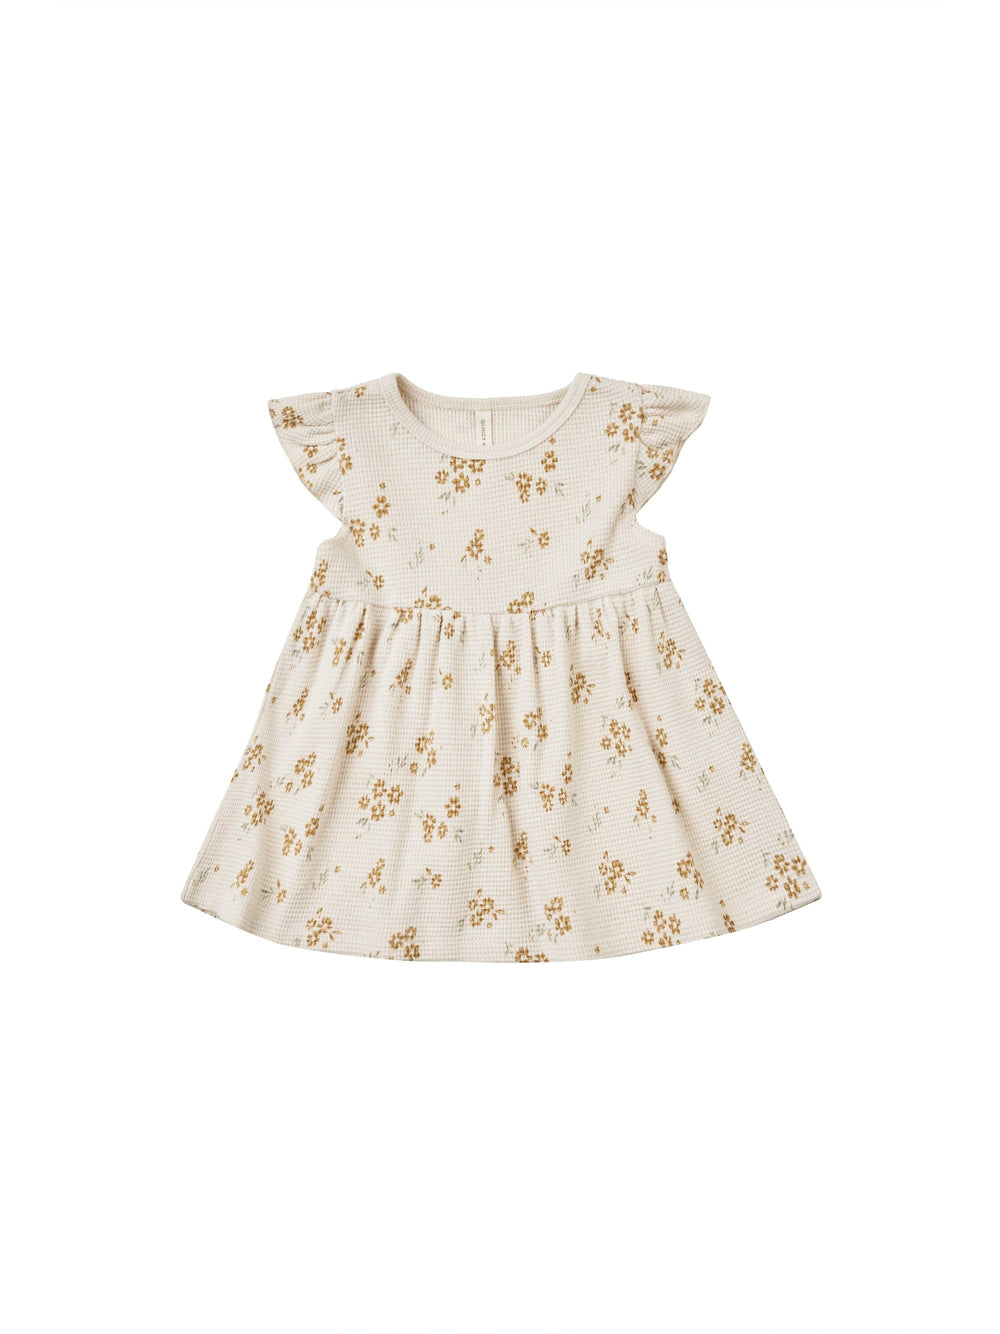 Quincy Mae Baby & Toddler Dresses Flutter Sleeve Dress - Honey Flower